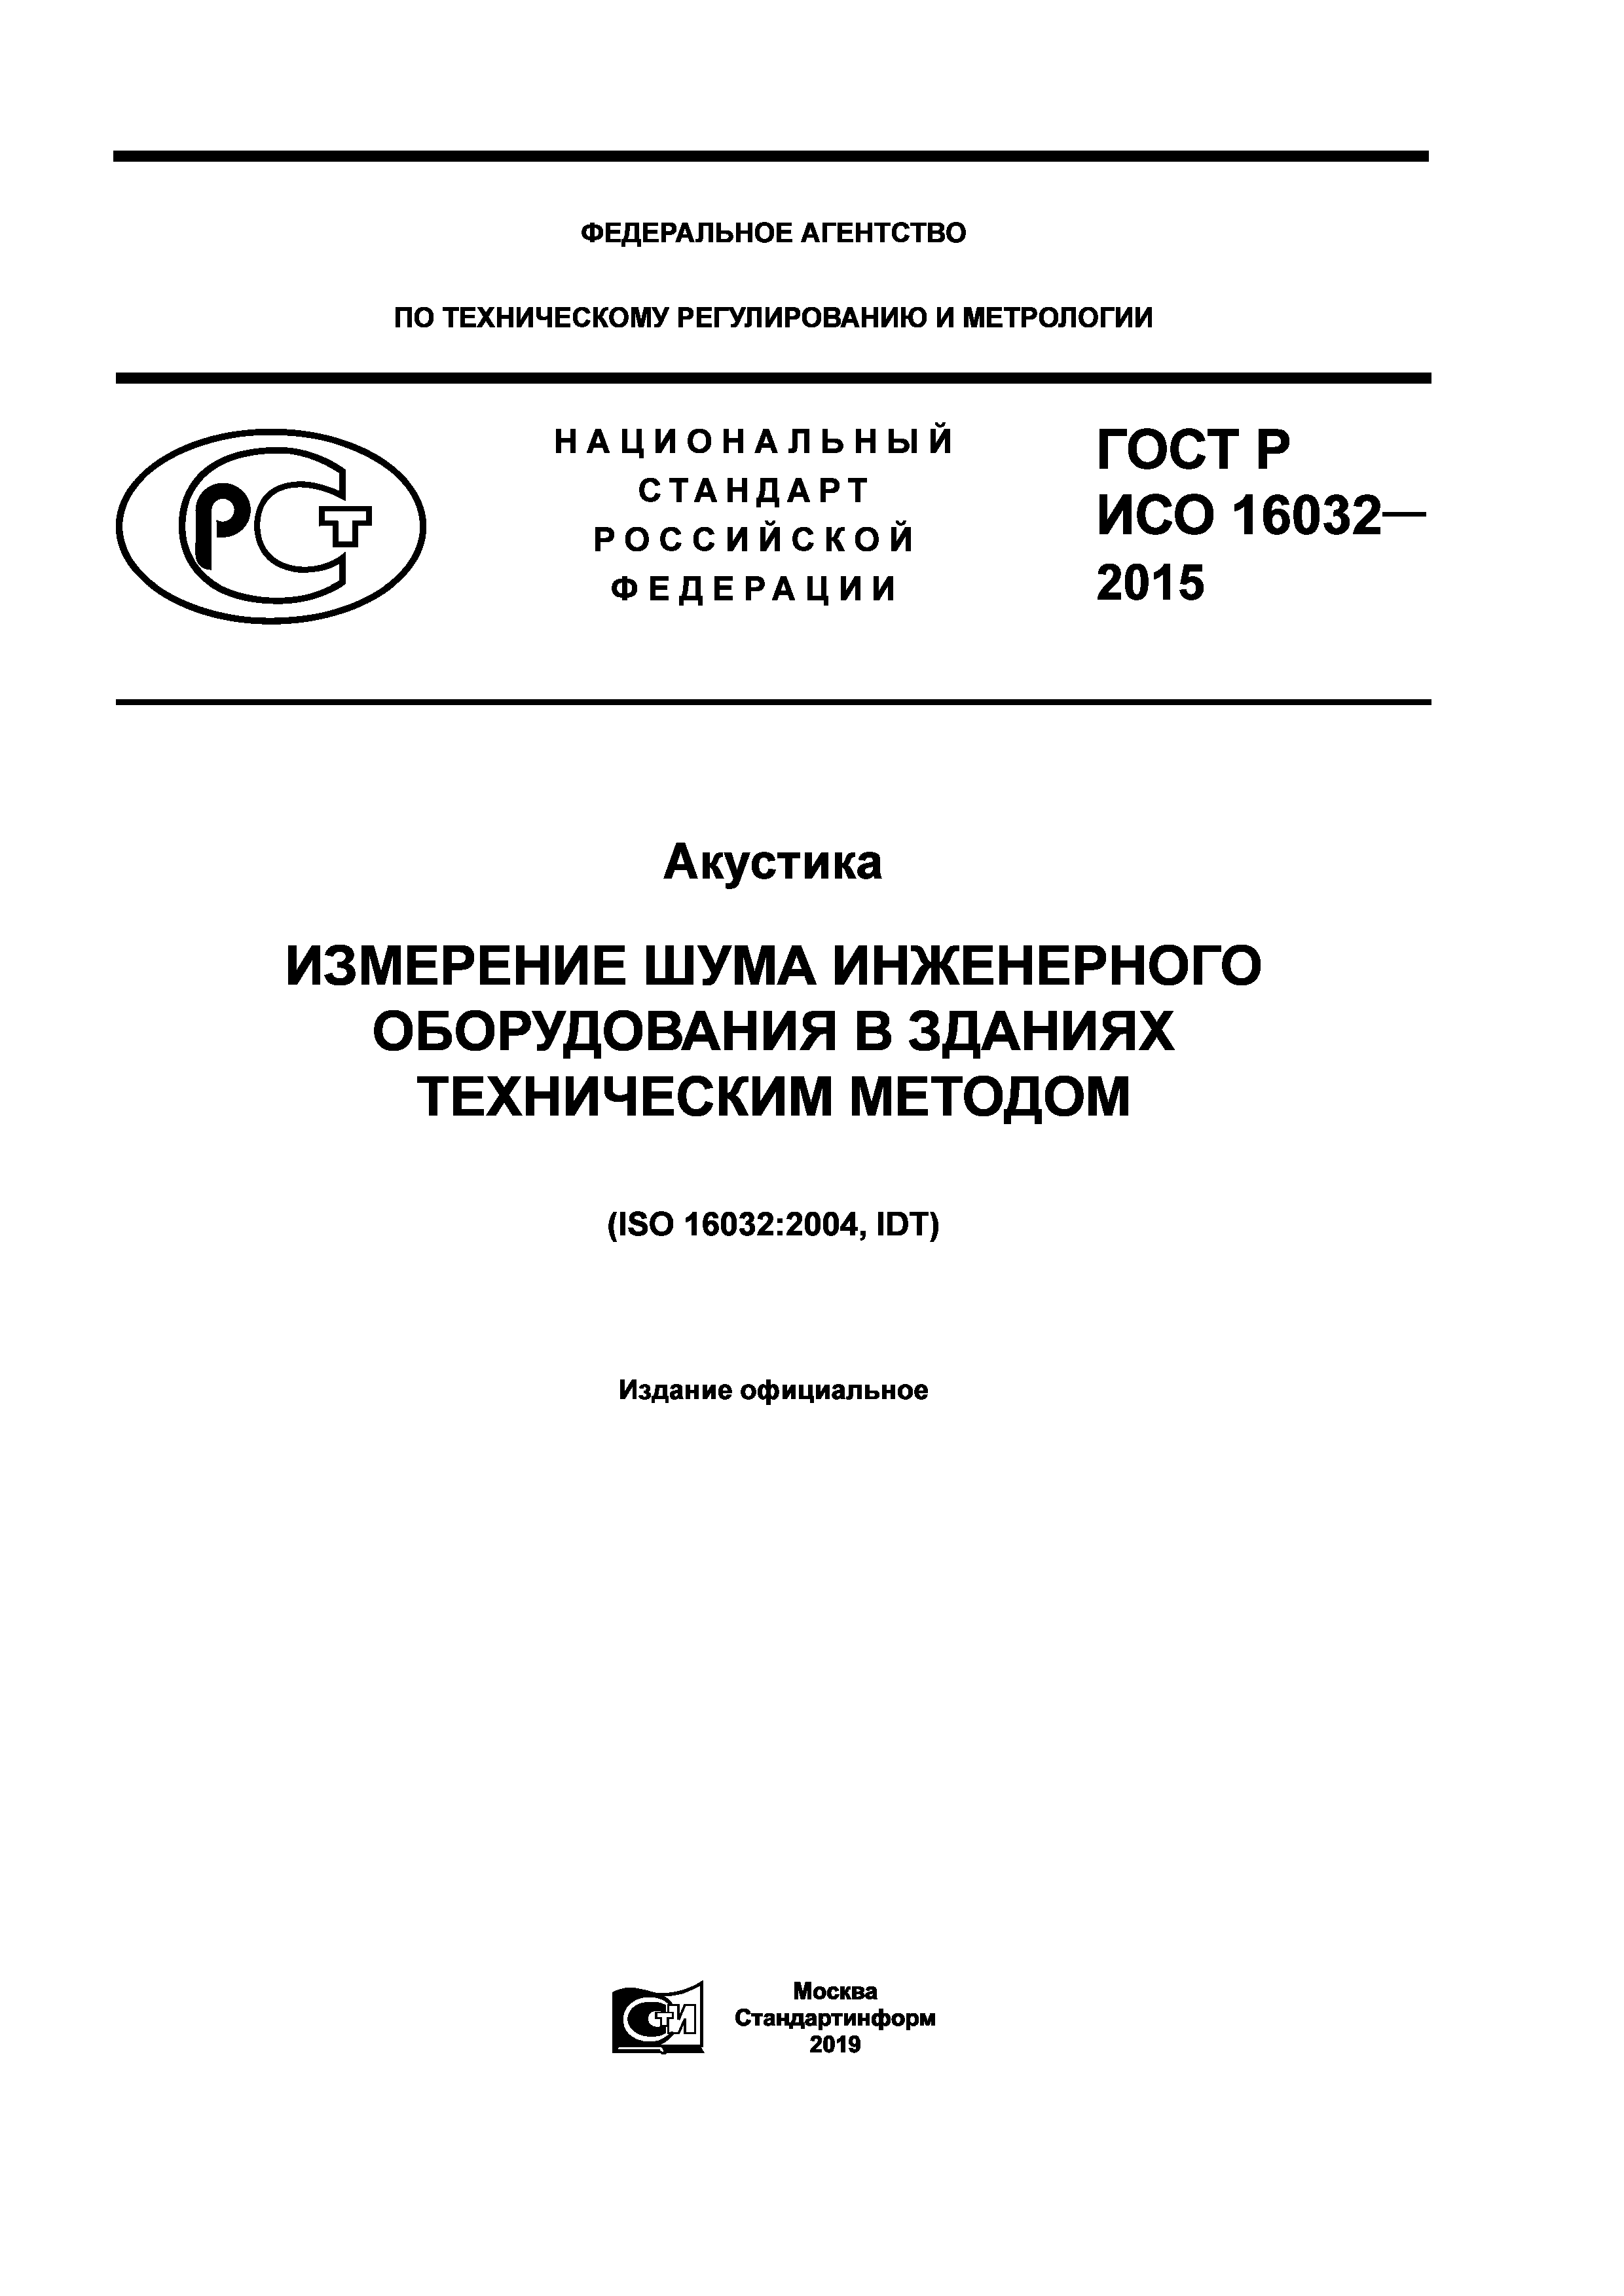 ГОСТ Р ИСО 16032-2015